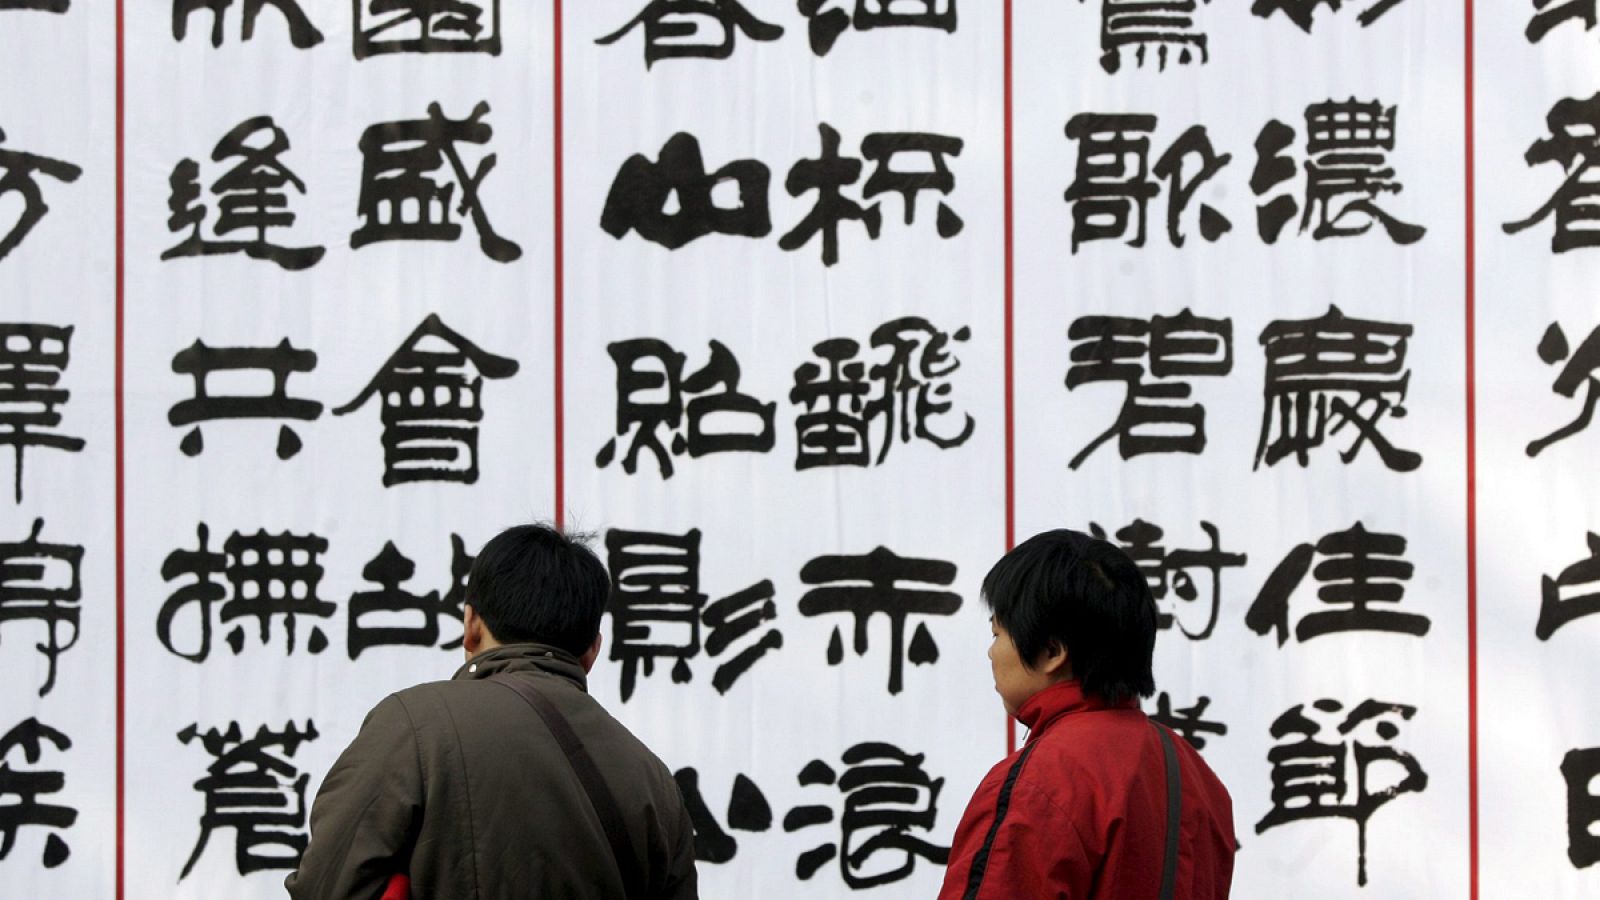 Dos personas observan unos carteles de caligrafía treadicional china